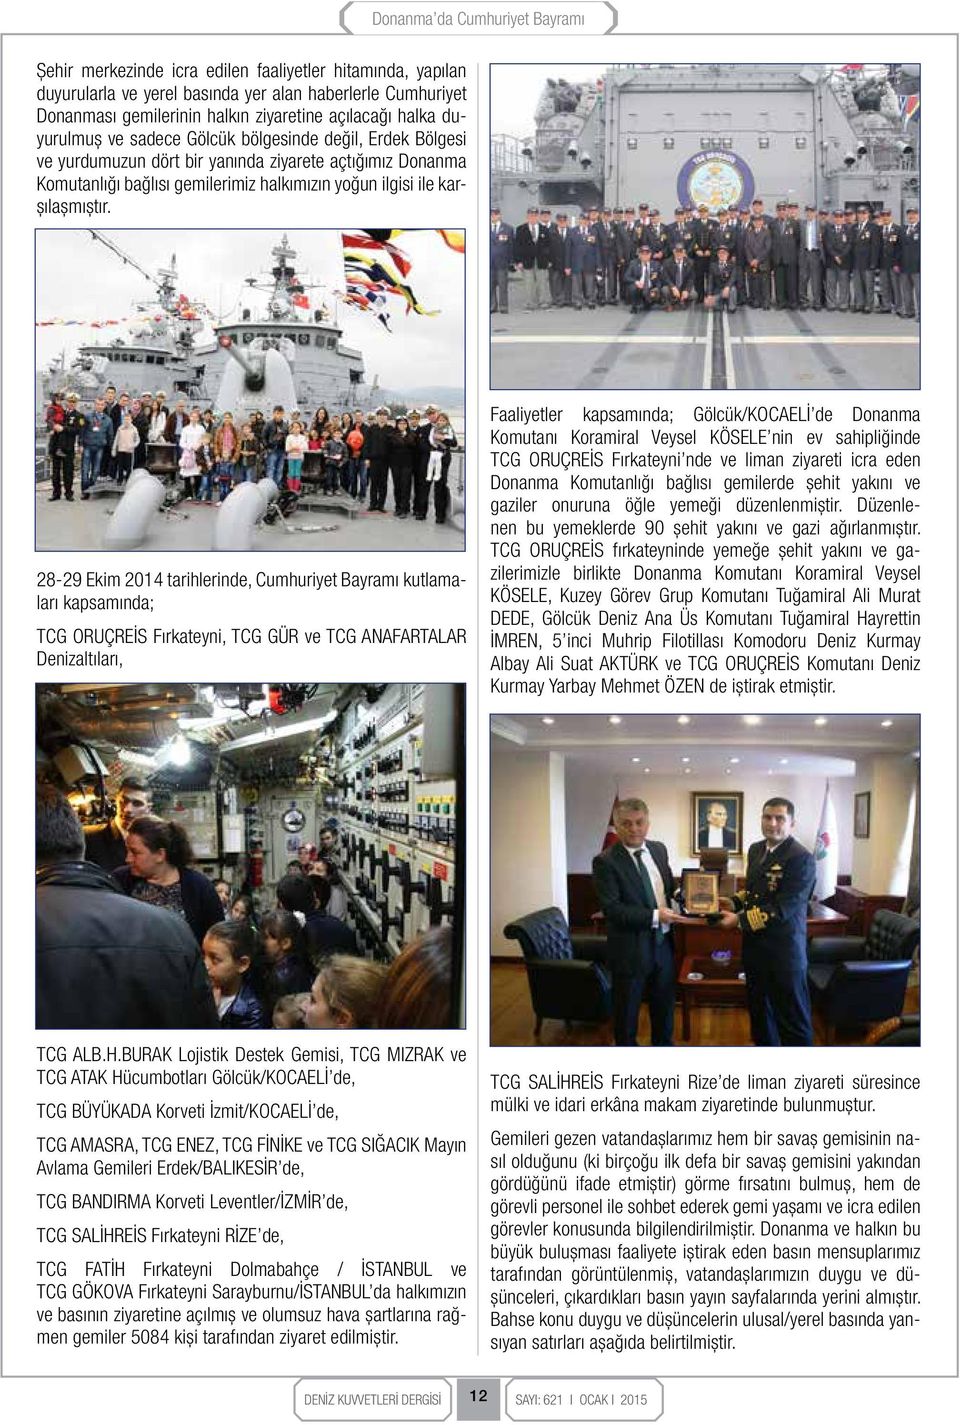 28-29 Ekim 2014 tarihlerinde, Cumhuriyet Bayramı kutlamaları kapsamında; TCG ORUÇREİS Fırkateyni, TCG GÜR ve TCG ANAFARTALAR Denizaltıları, Faaliyetler kapsamında; Gölcük/KOCAELİ de Donanma Komutanı